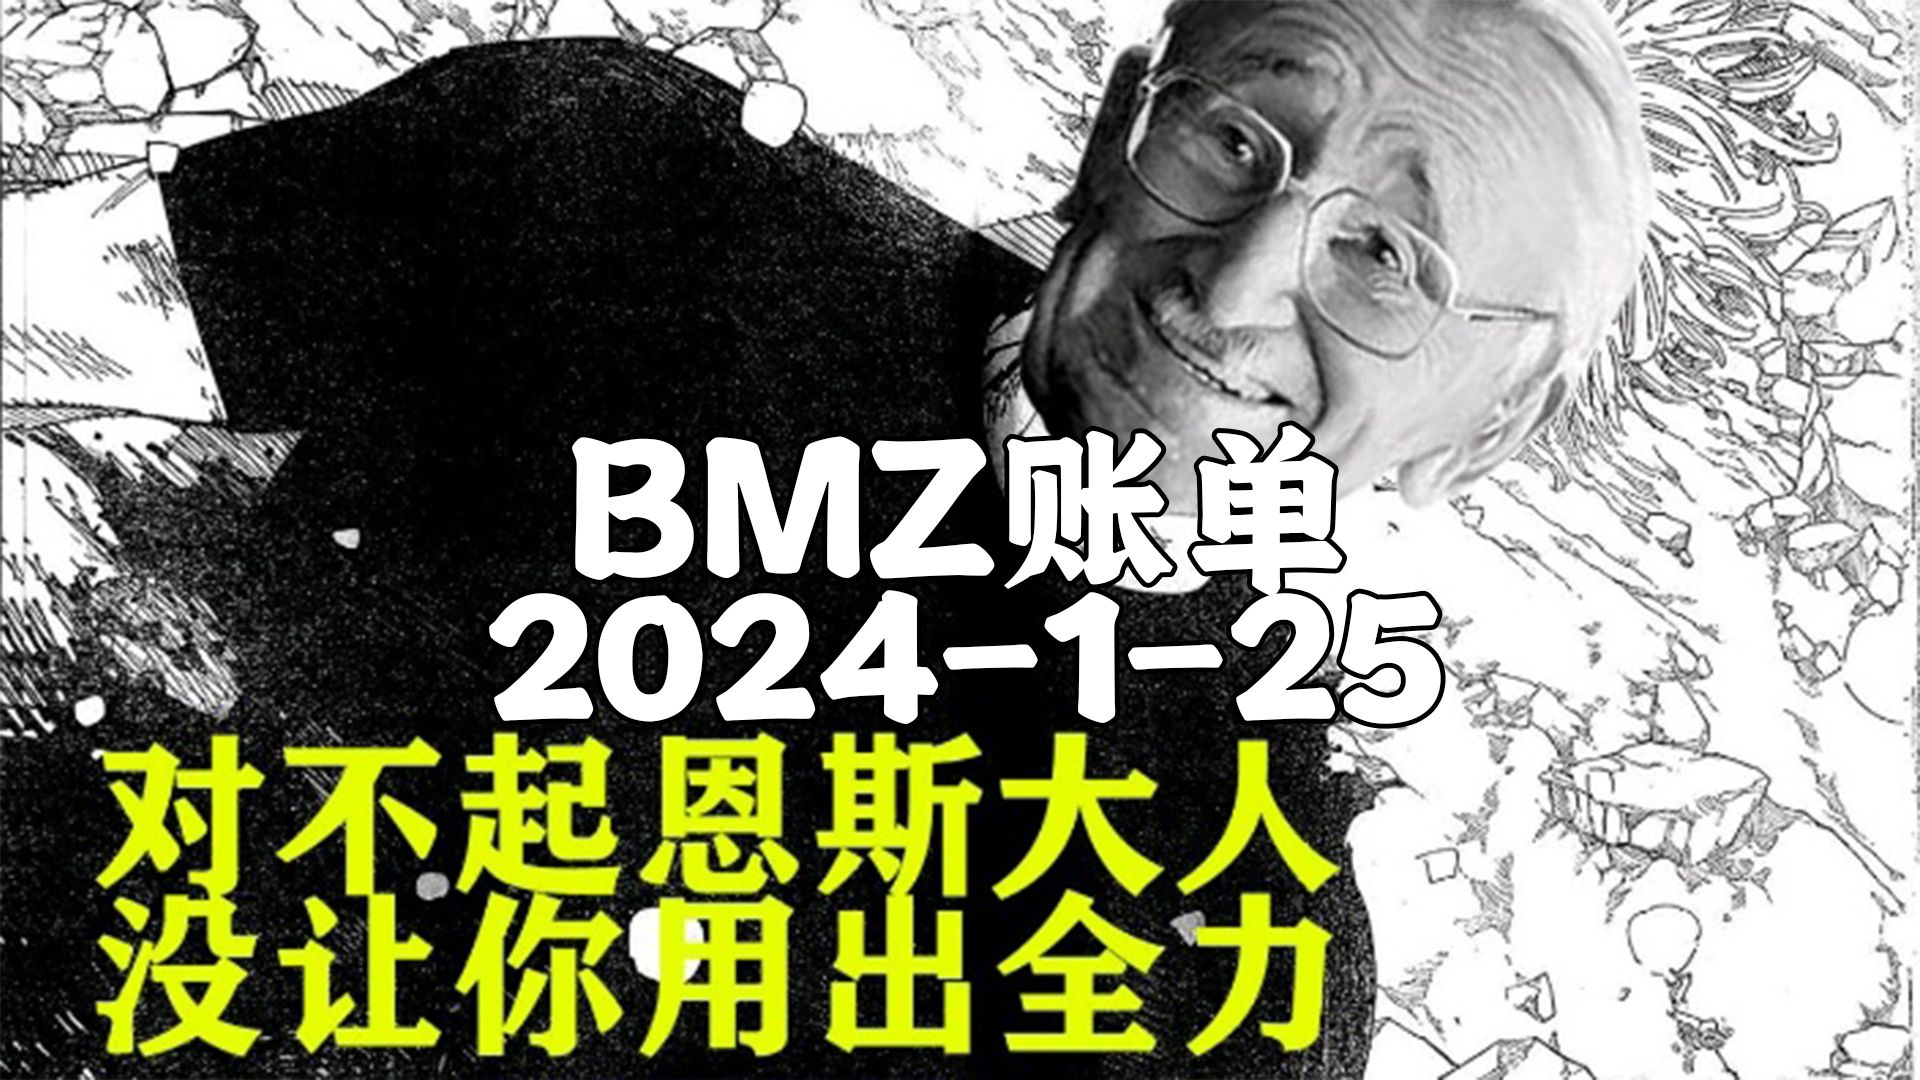 【BMZ账单】2024-1-25抵抗系2台经济频道 去无声